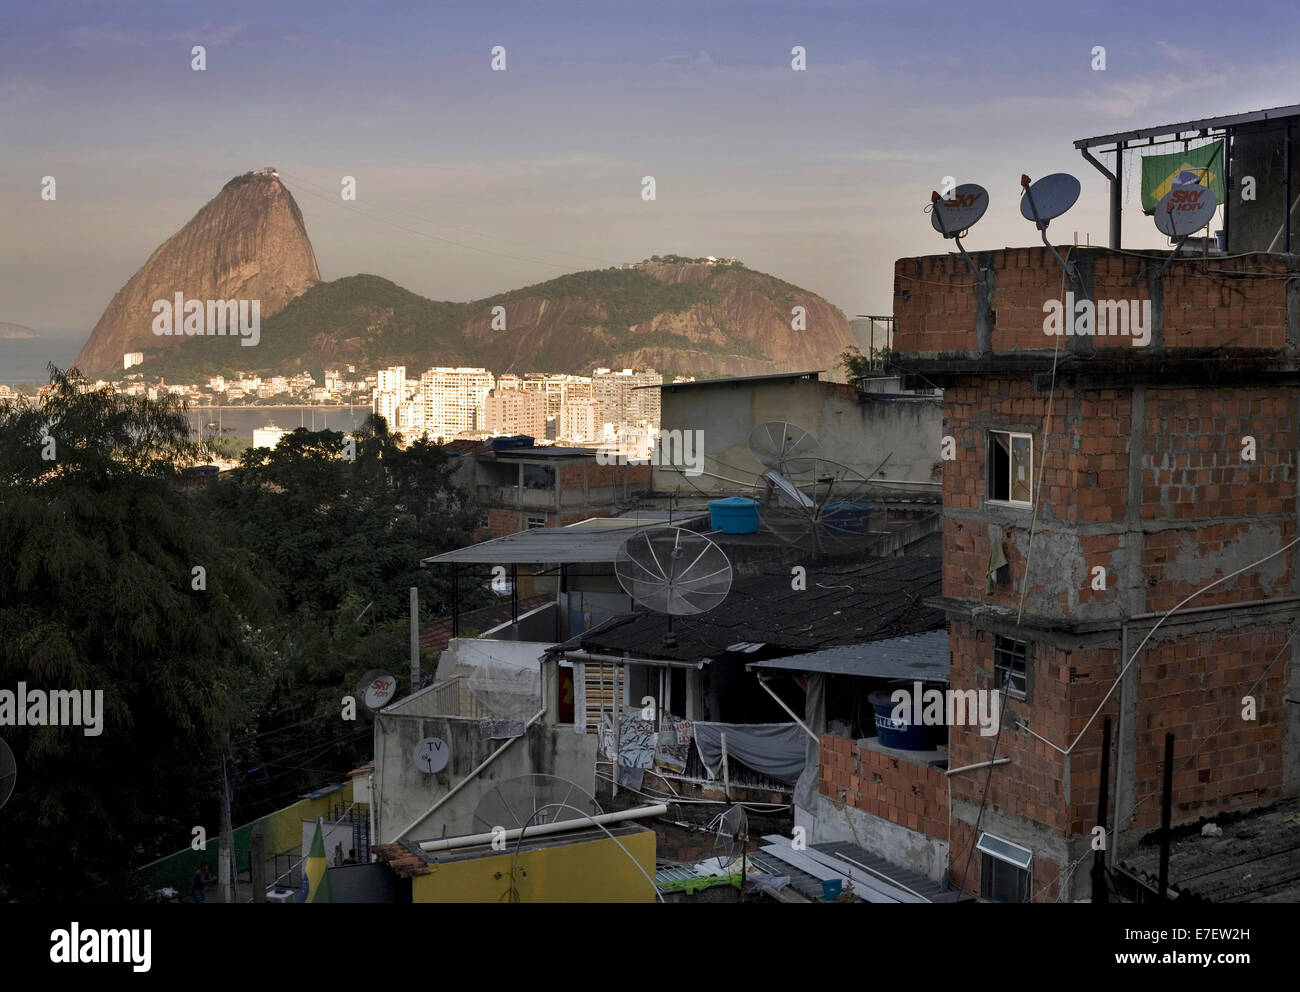 Vue sur le pain de sucre de l'intérieur de la favela de tabares bastos à Rio de Janeiro. Brésil. Banque D'Images